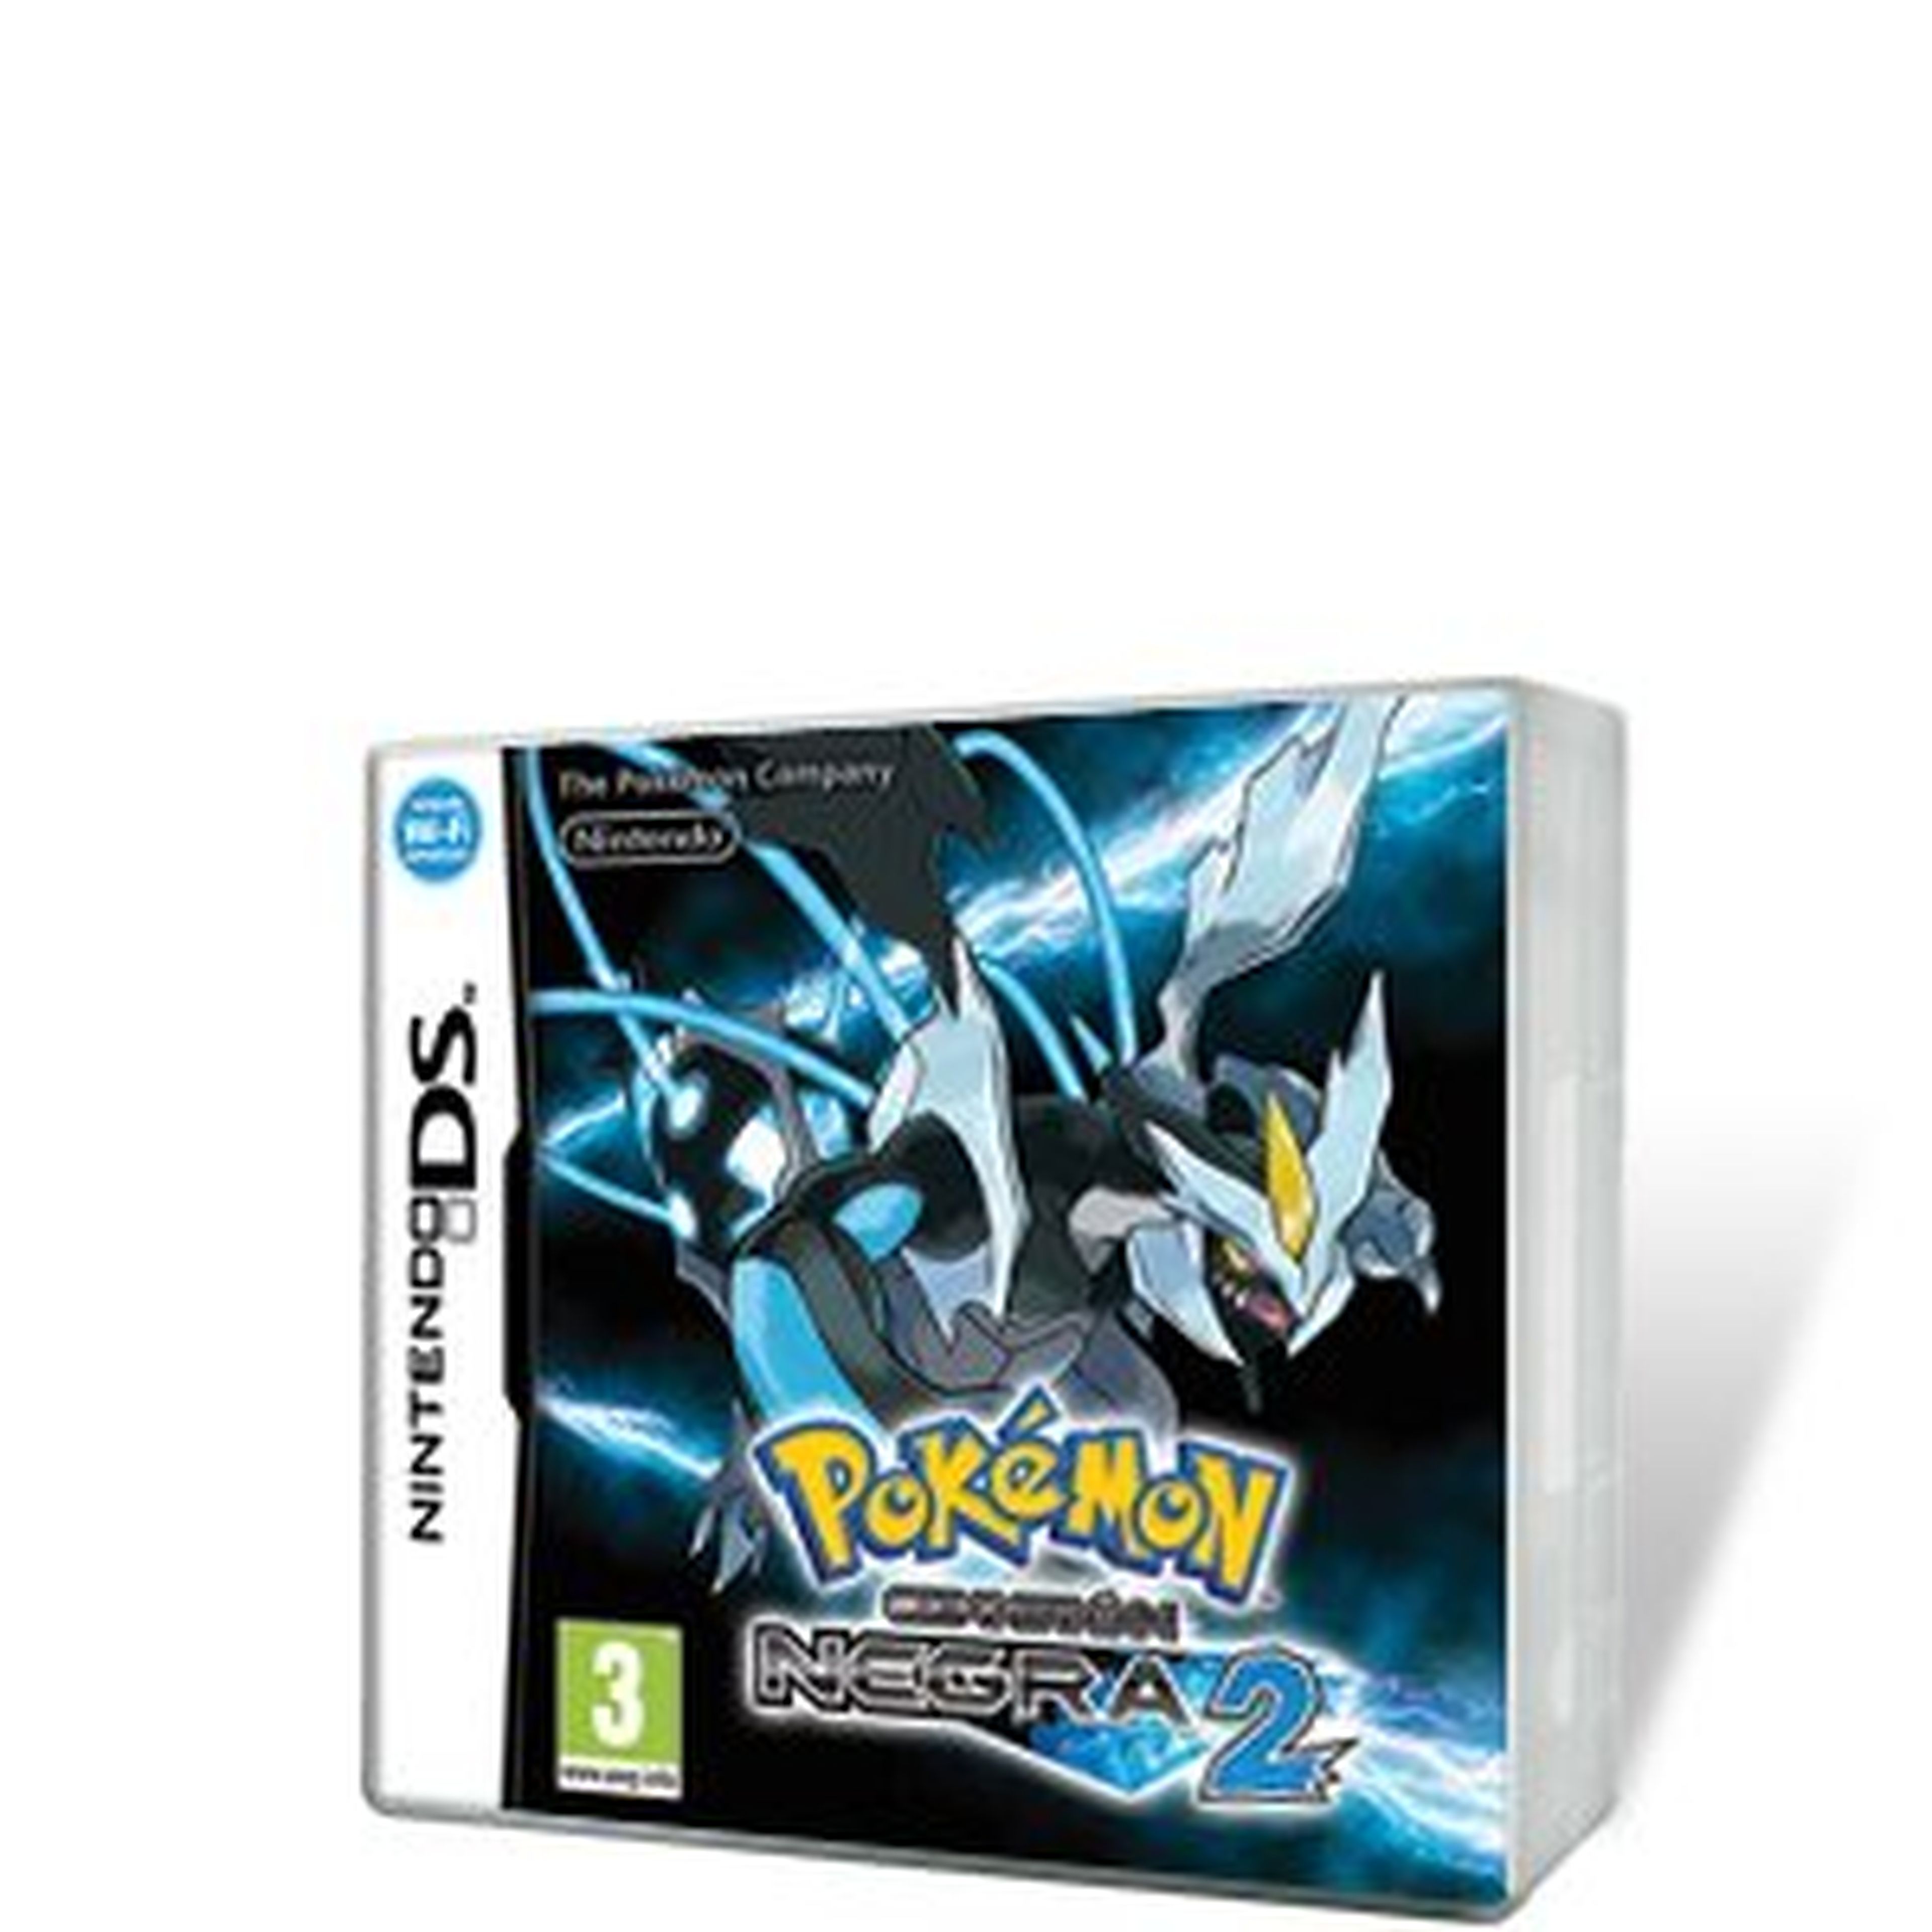 Pokémon Edición Negra 2 para NDS